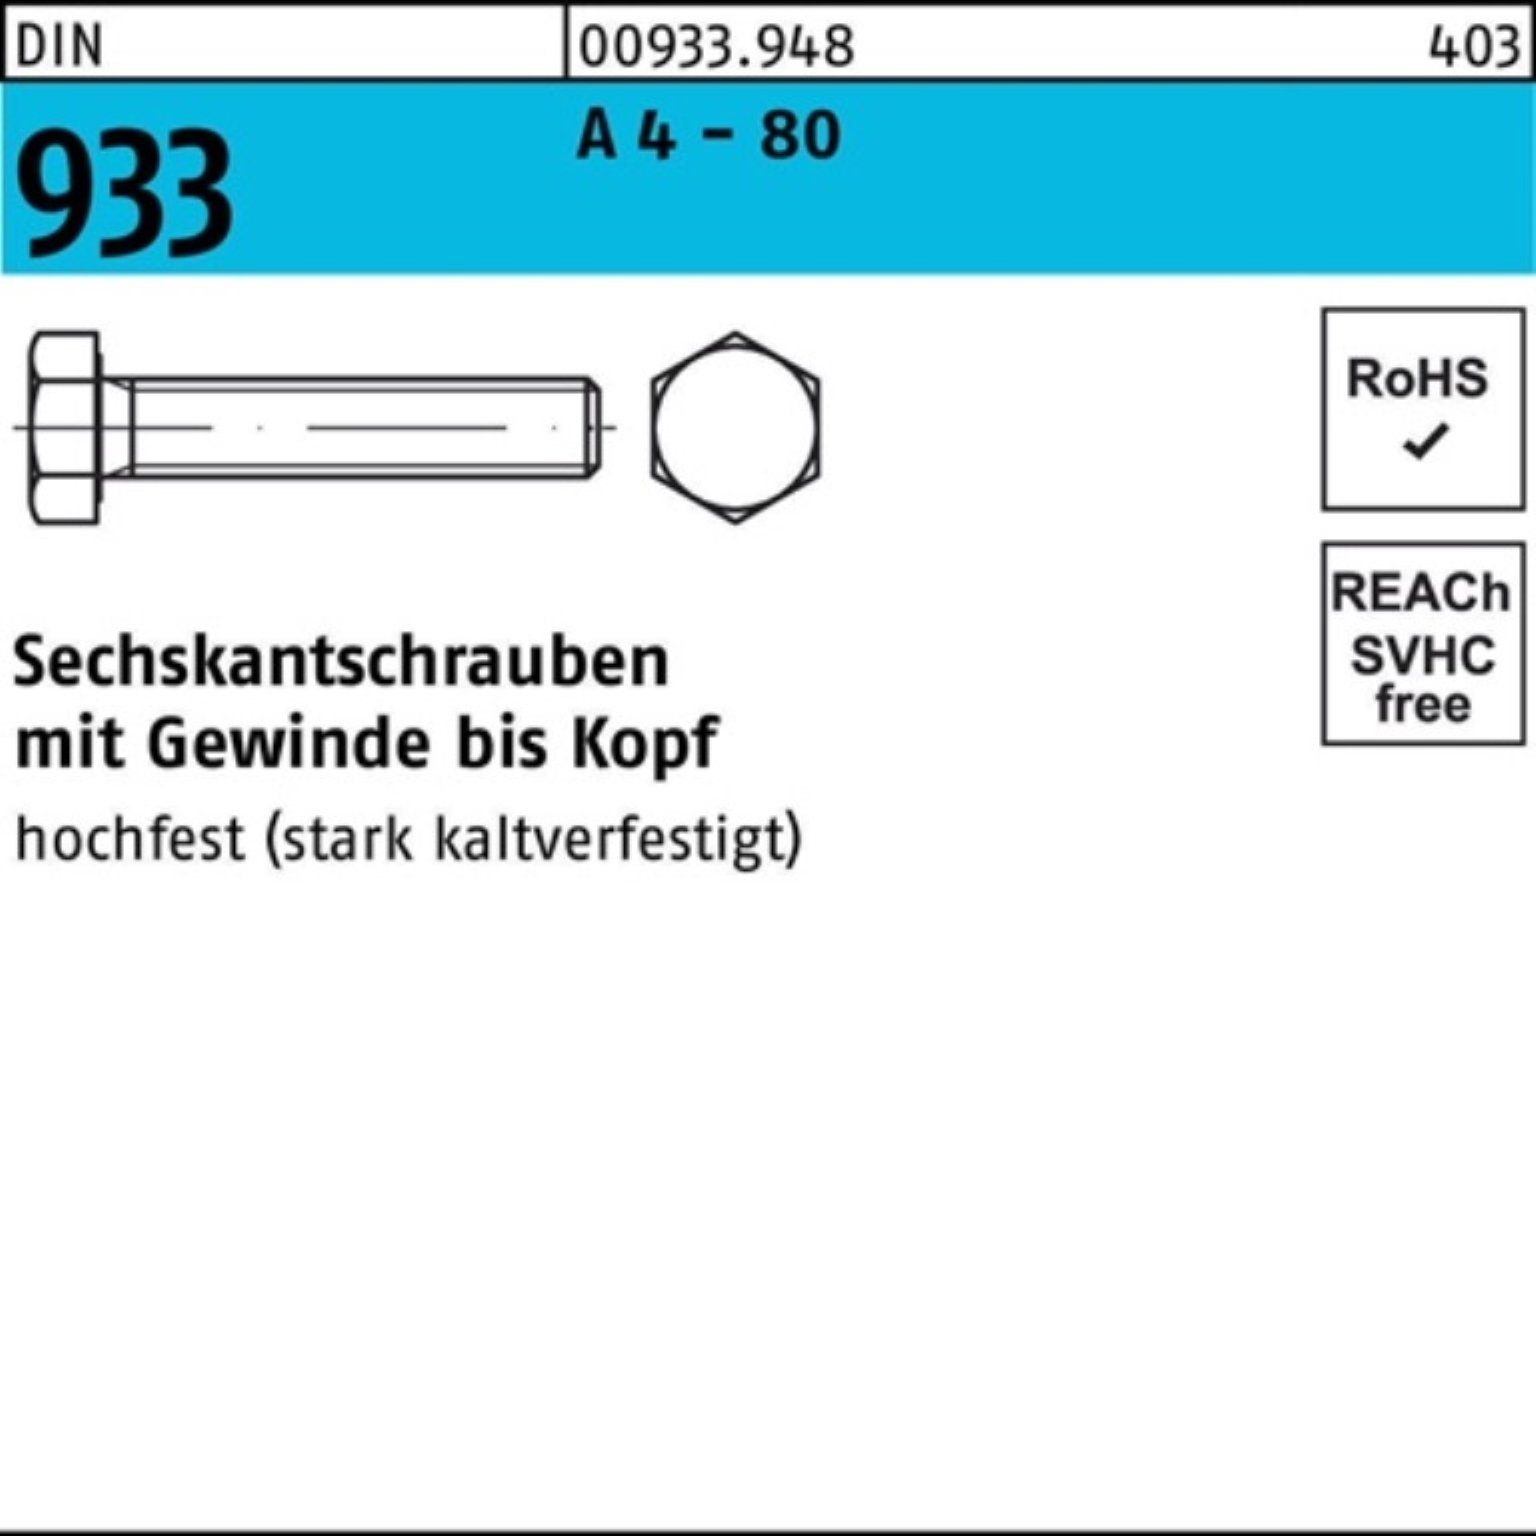 Reyher Sechskantschraube 100er Pack Sechskantschraube DIN 933 VG M10x 16 A 4 - 80 100 Stück DI